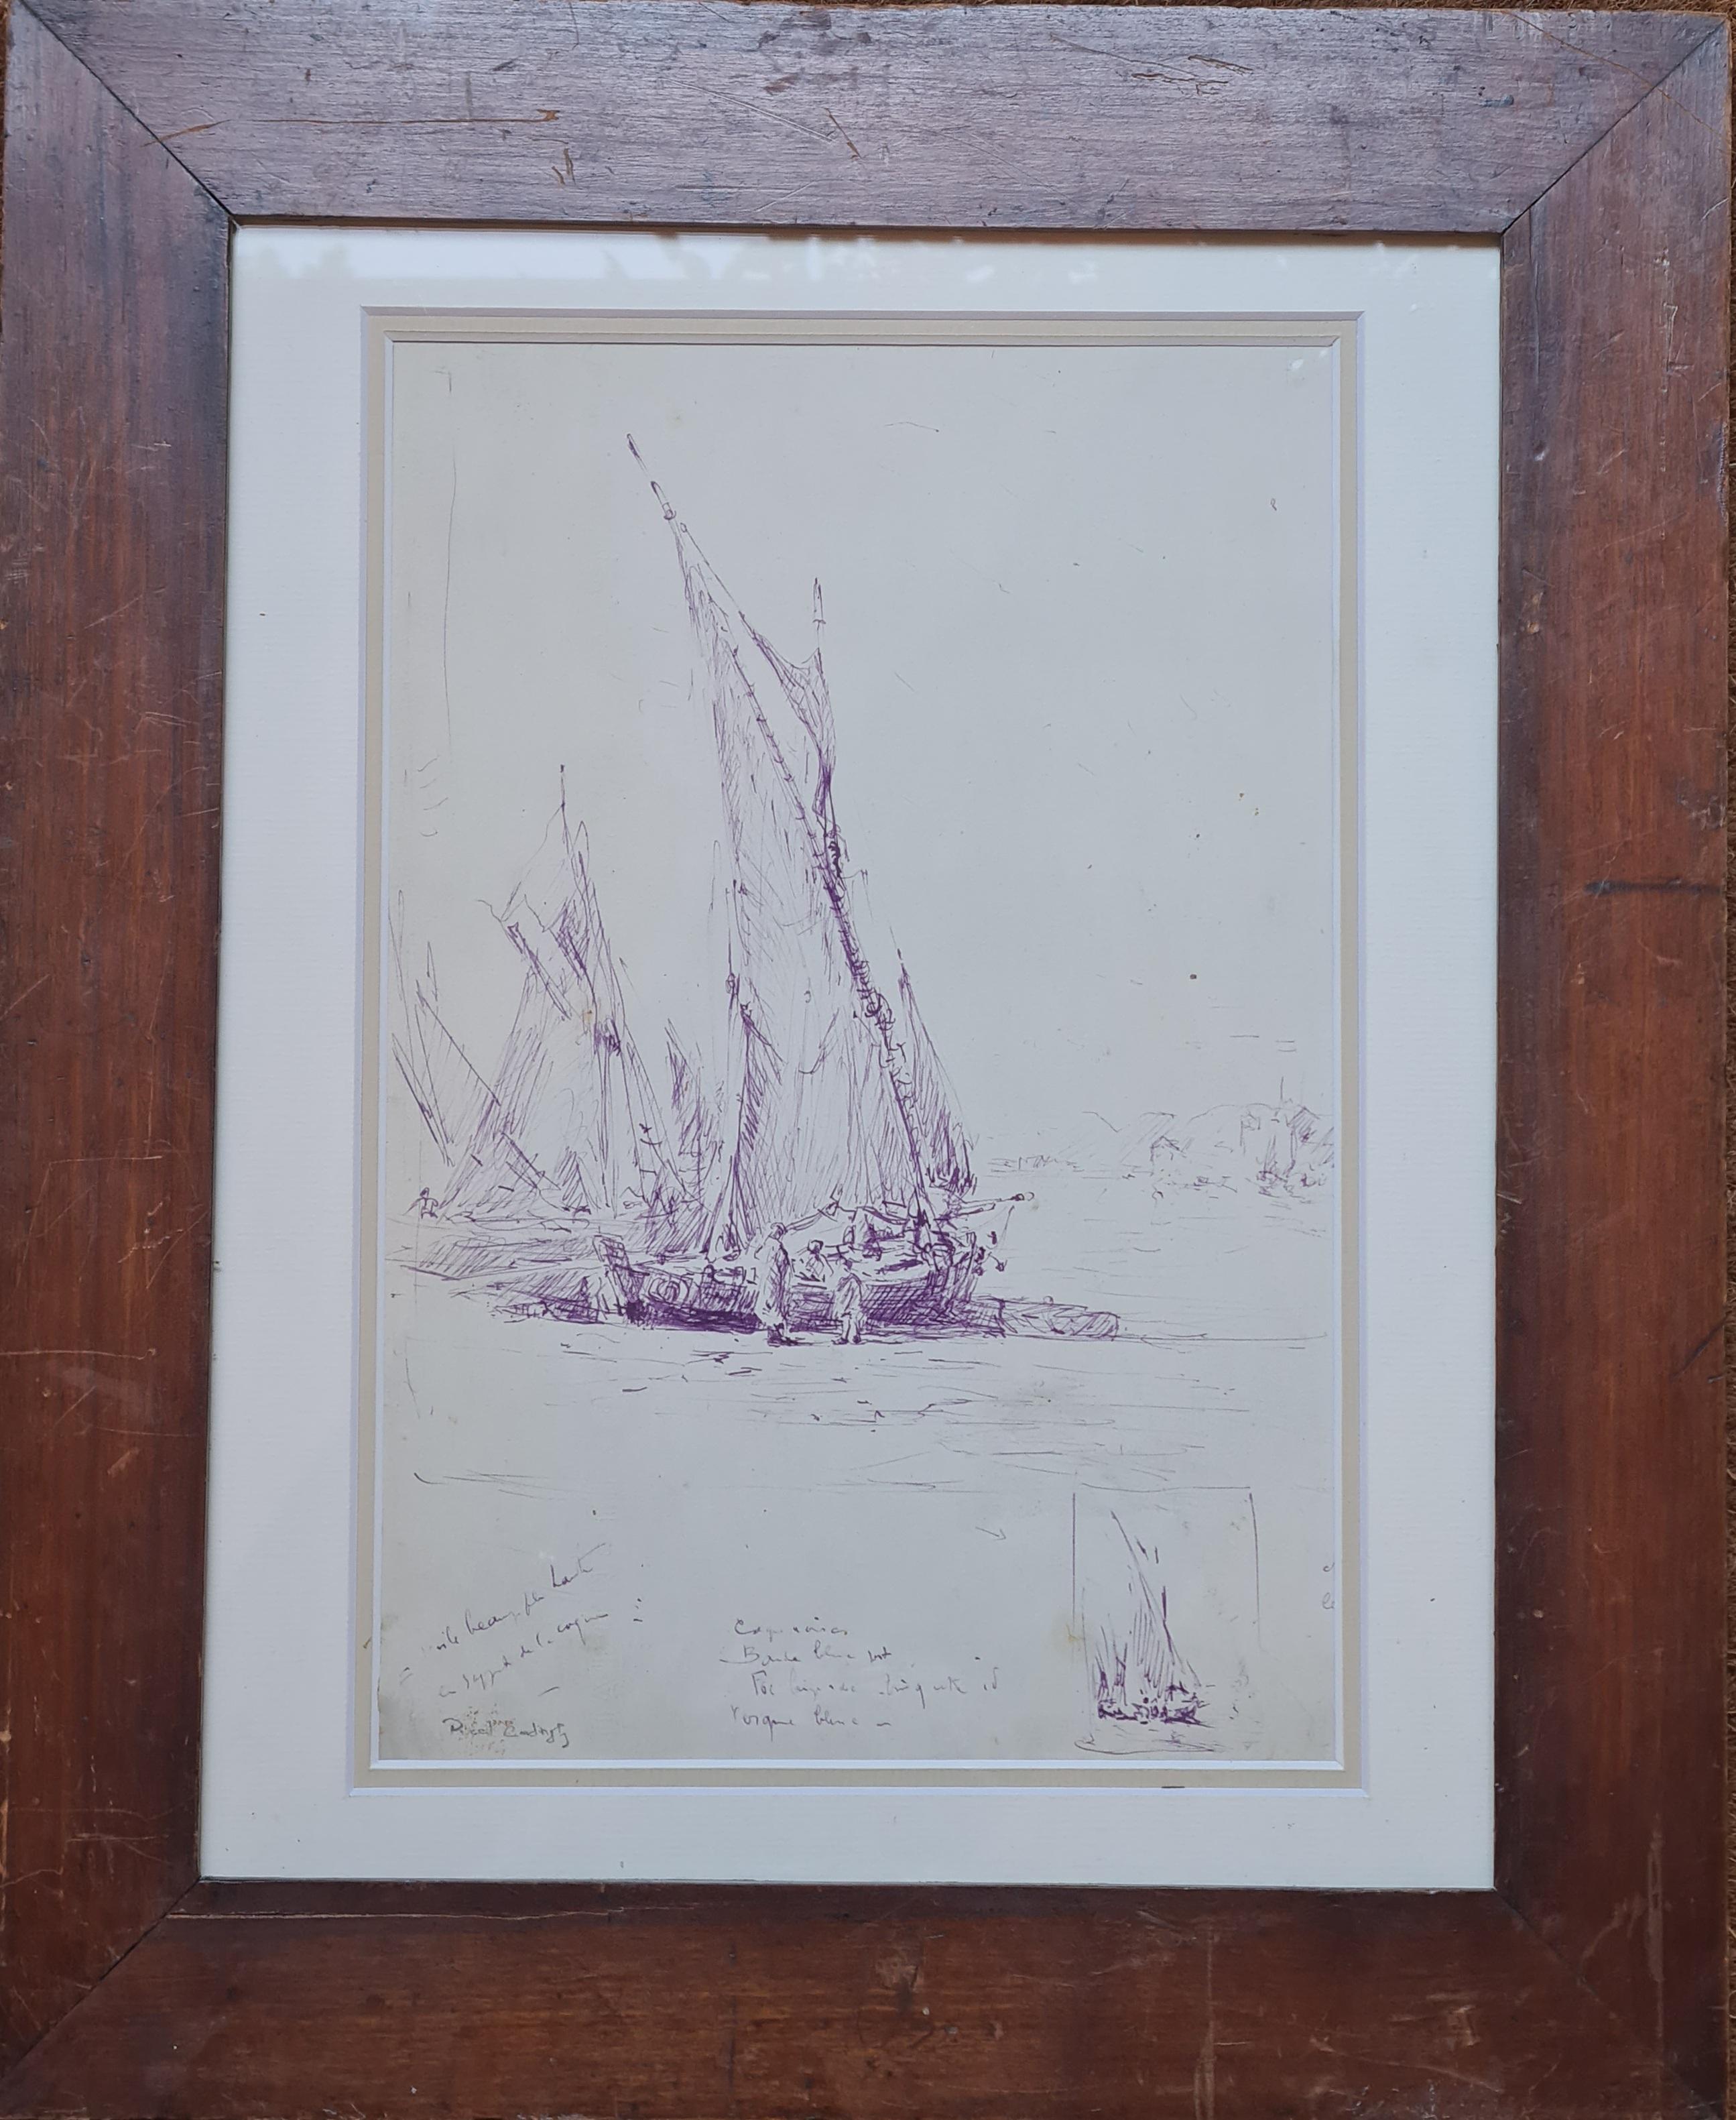 Fischboote, französische Mauve-Tinte-Zeichnung der Marine, spätes 19. Jahrhundert (Romantik), Art, von Georges Ricard-Cordingley